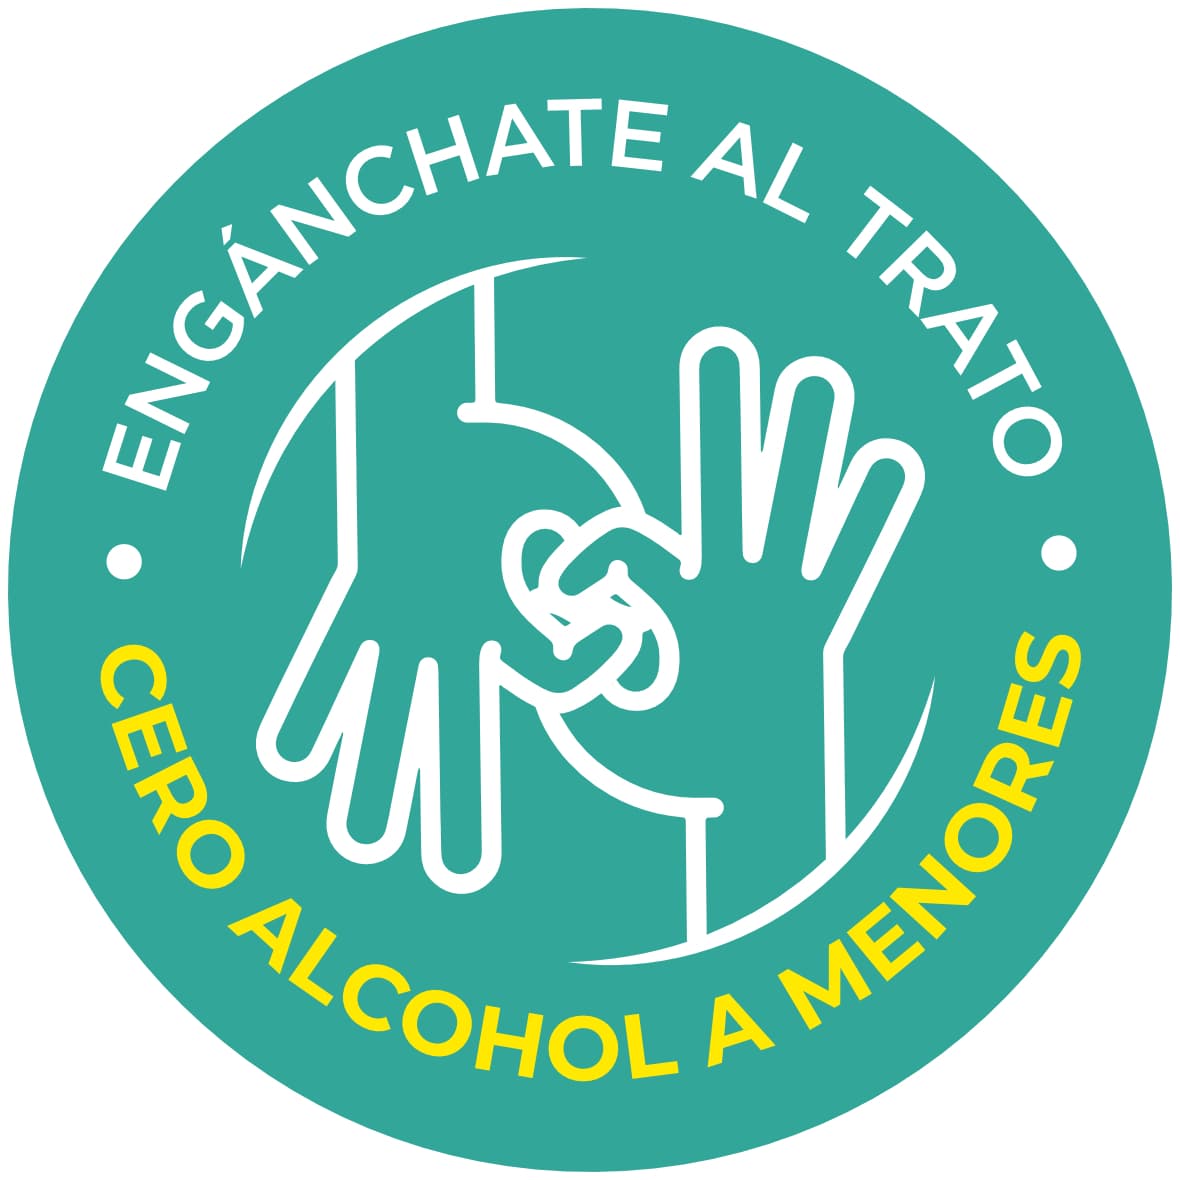 Grafismo de Engánchate al trato cero alcohol a menores Cervecería Hondureña